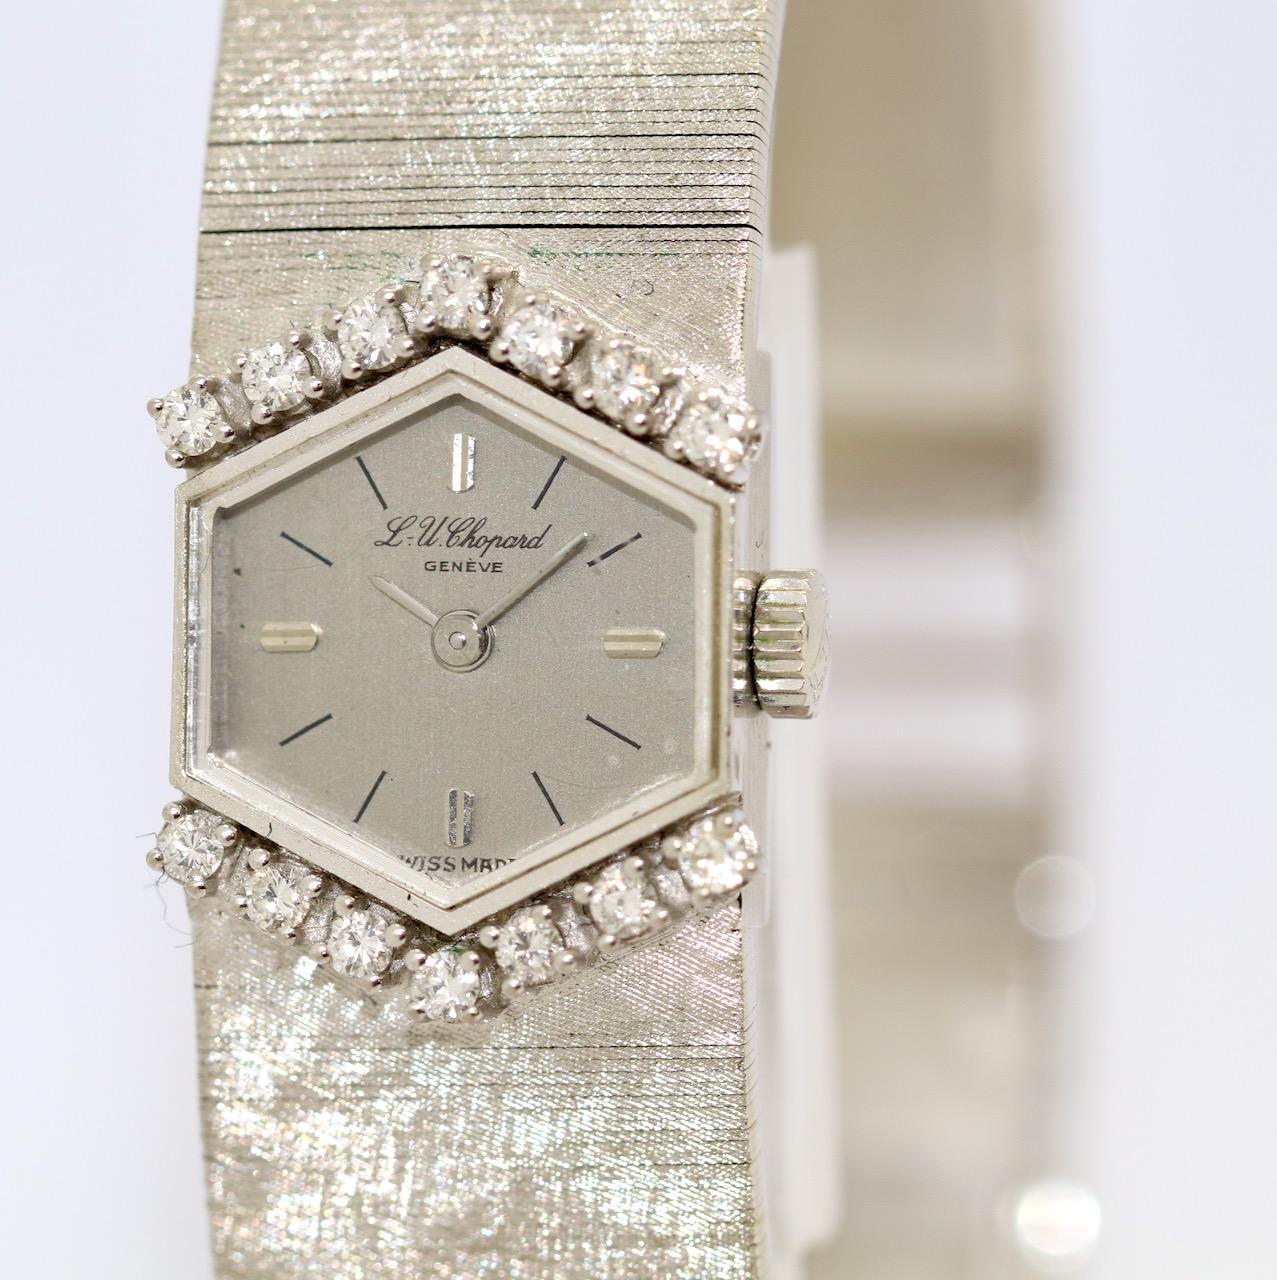 Montre-bracelet pour dames en or blanc 18 carats par Chopard, avec diamants, forme hexagonale

Certificat d'authenticité inclus.